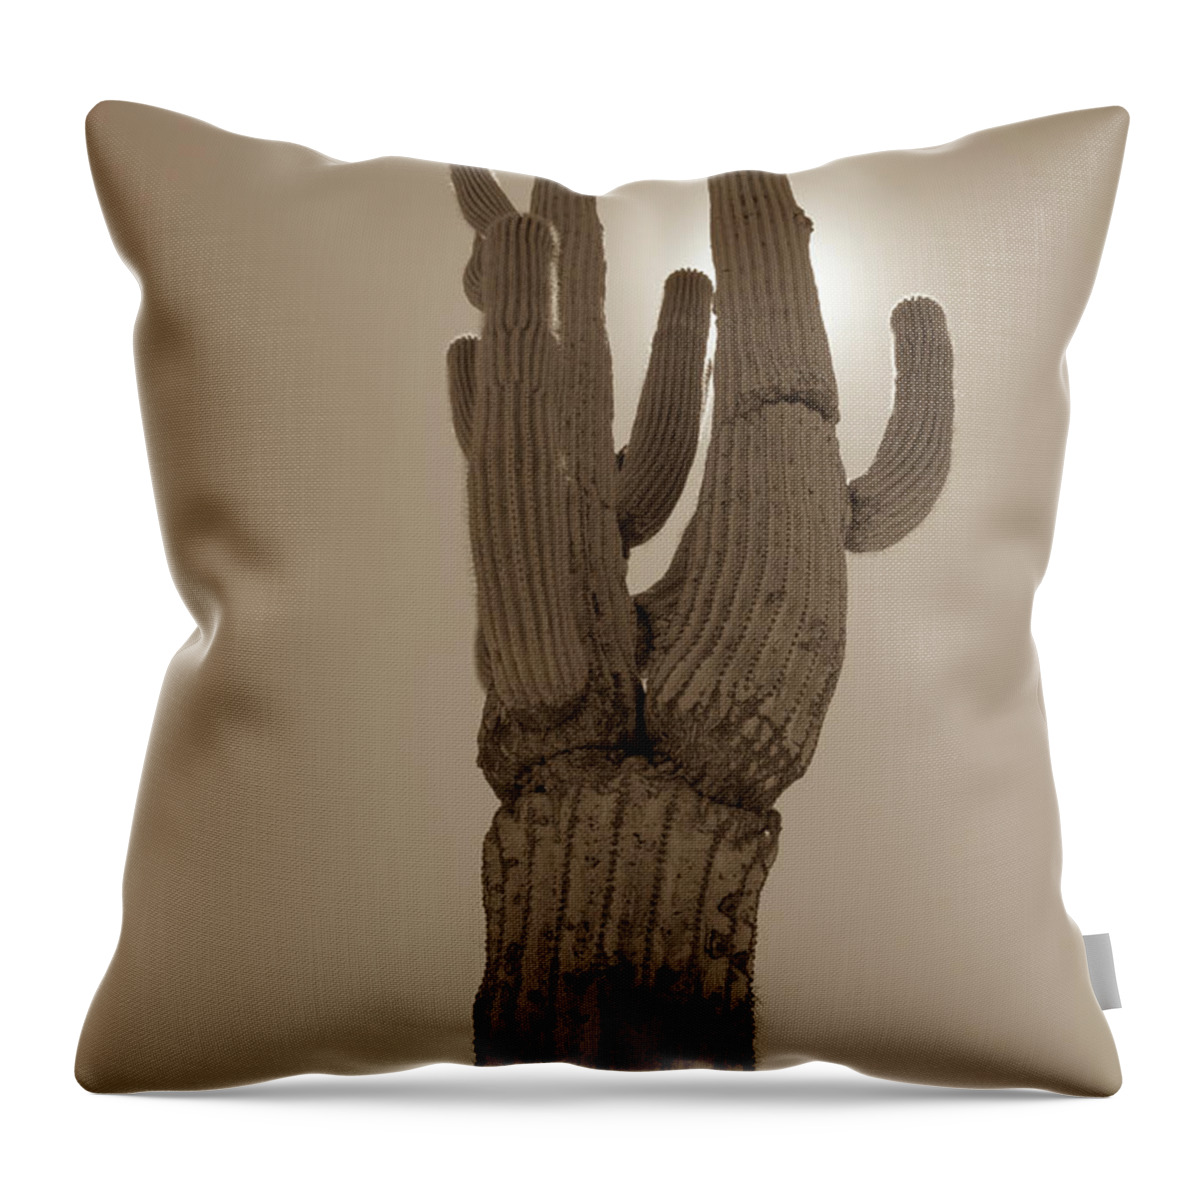 Desert Throw Pillow featuring the photograph Desert cactus by Darrell Foster